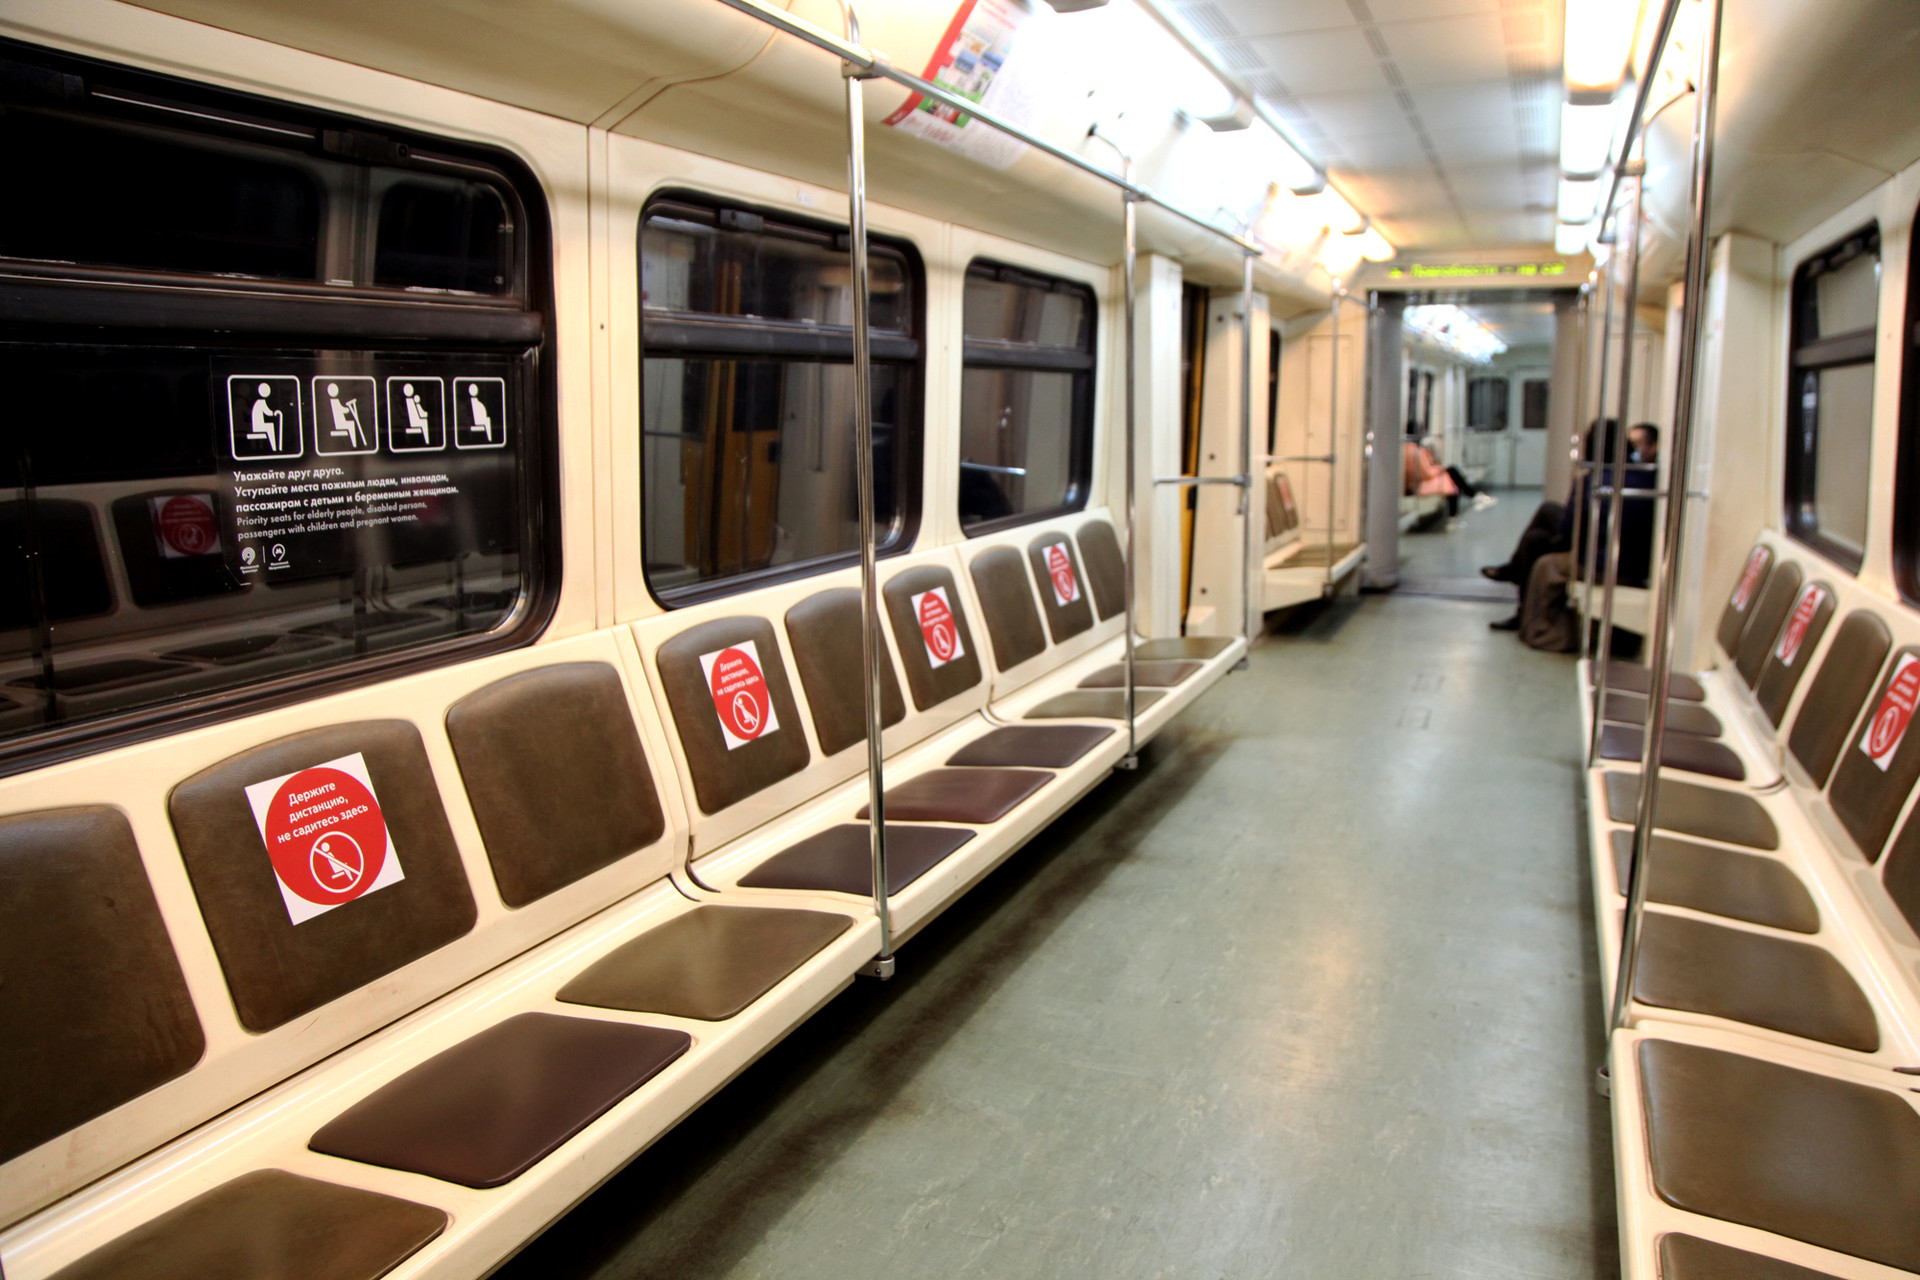 Suasana gerbong metro yang nyaris kosong. Beberapa gerbong bahkan terlihat tanpa penumpang sama sekali.